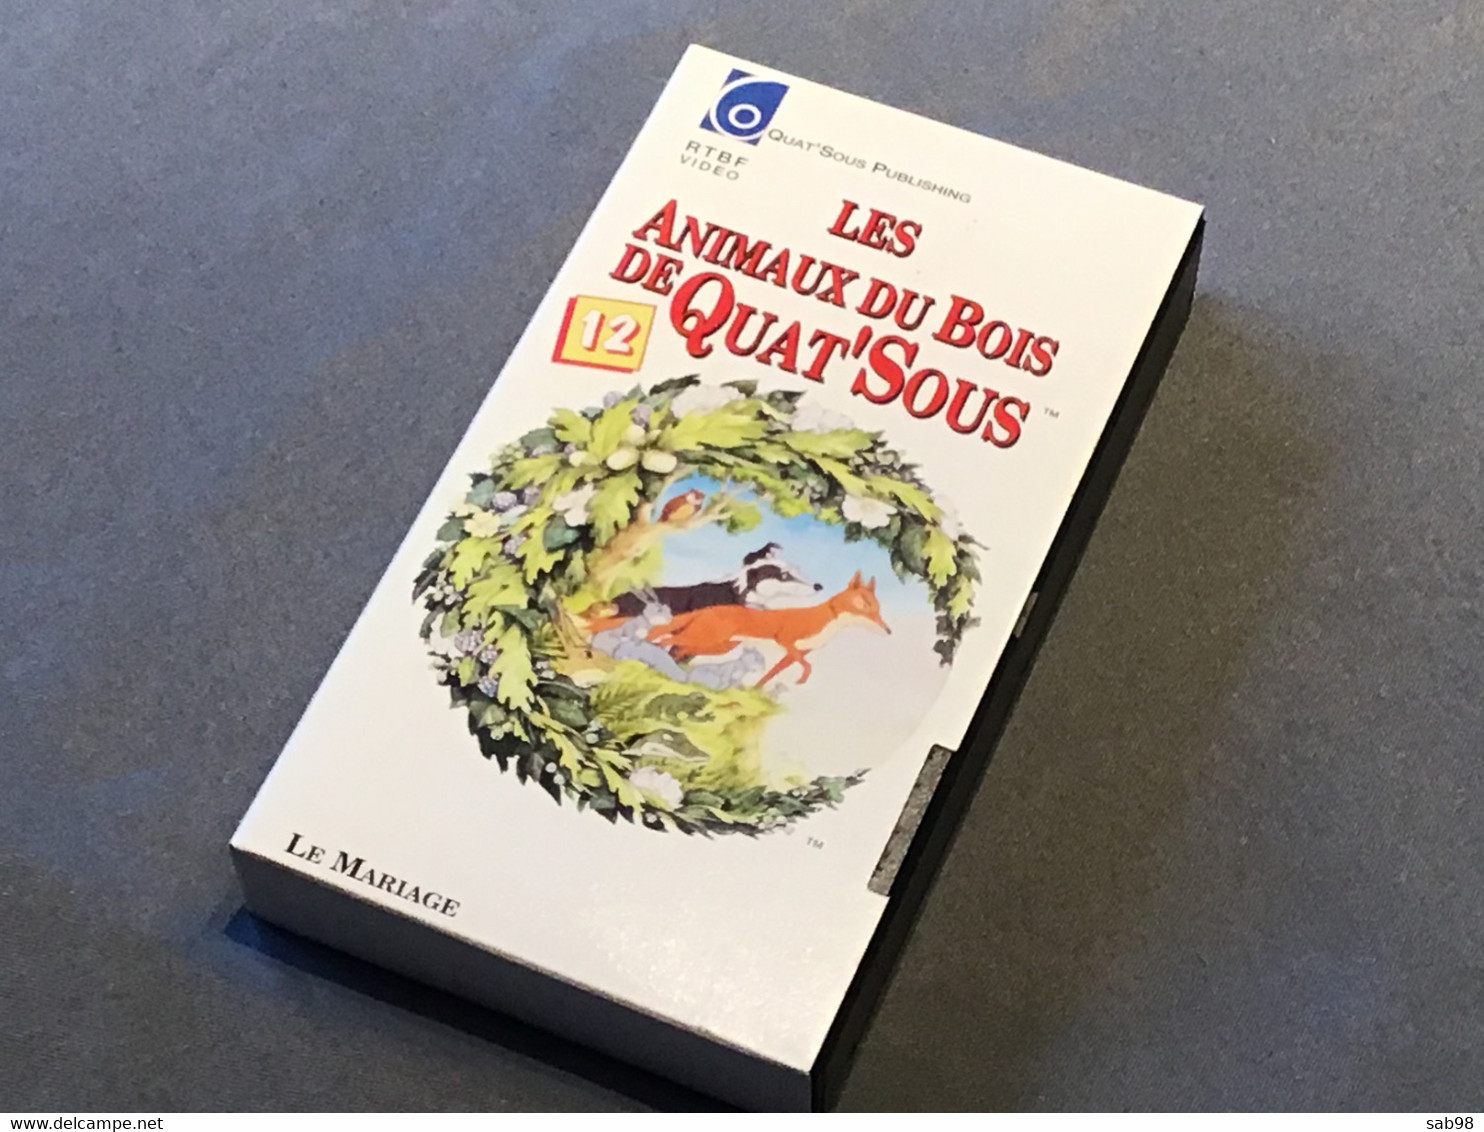 Les animaux du Bois de Quat’Sous Lot de 13 cassettes VHS Introuvable dans la plupart des commerces Carton et VHS de 1992